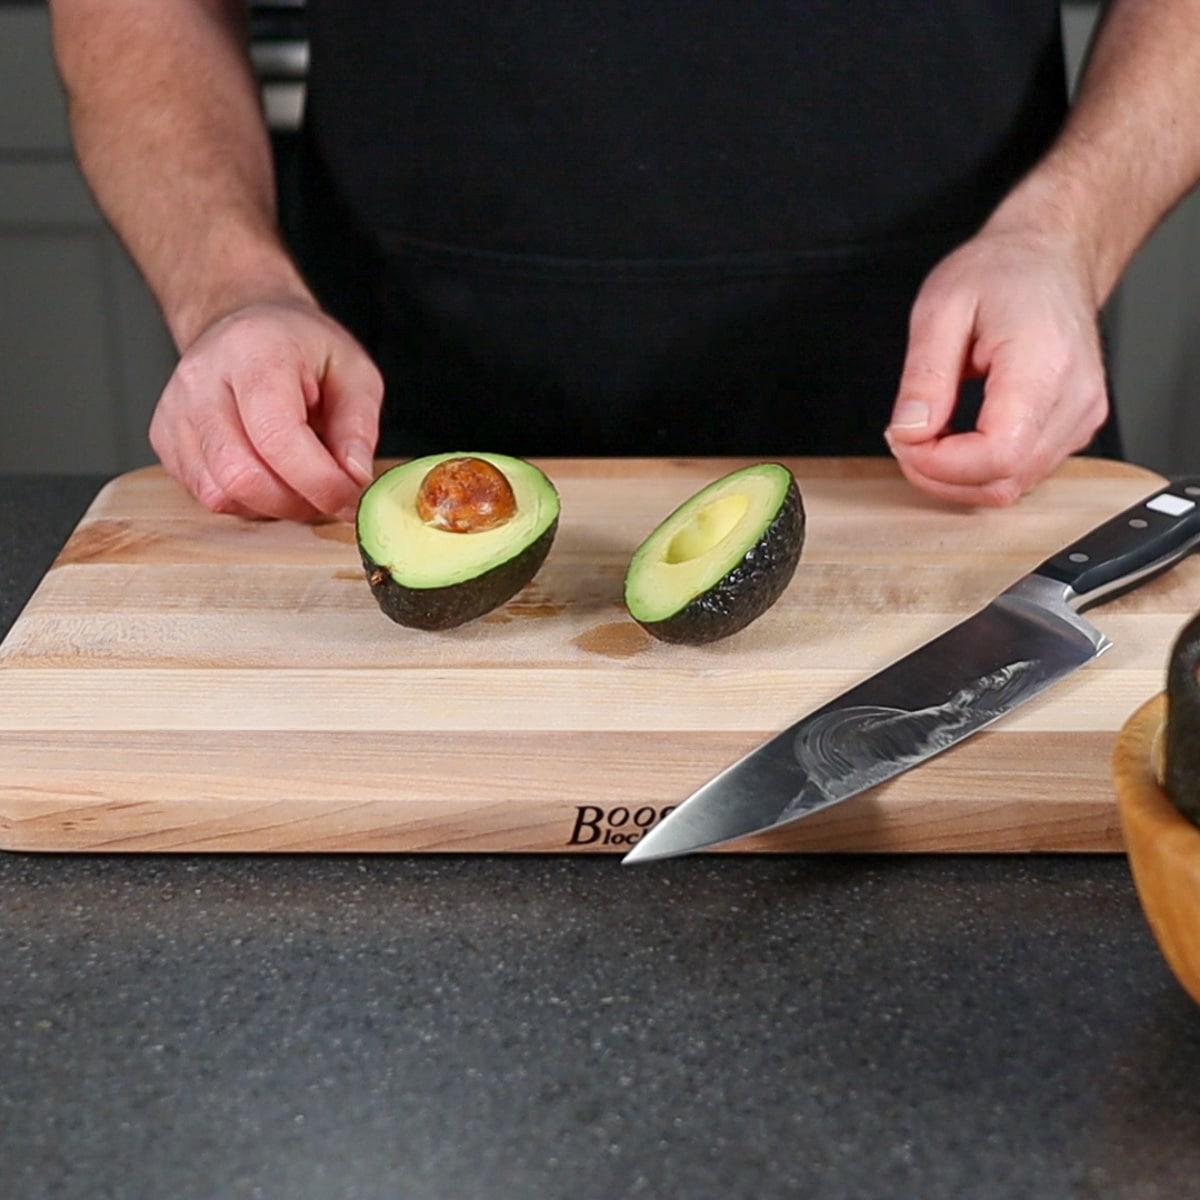 avocado cut in half
